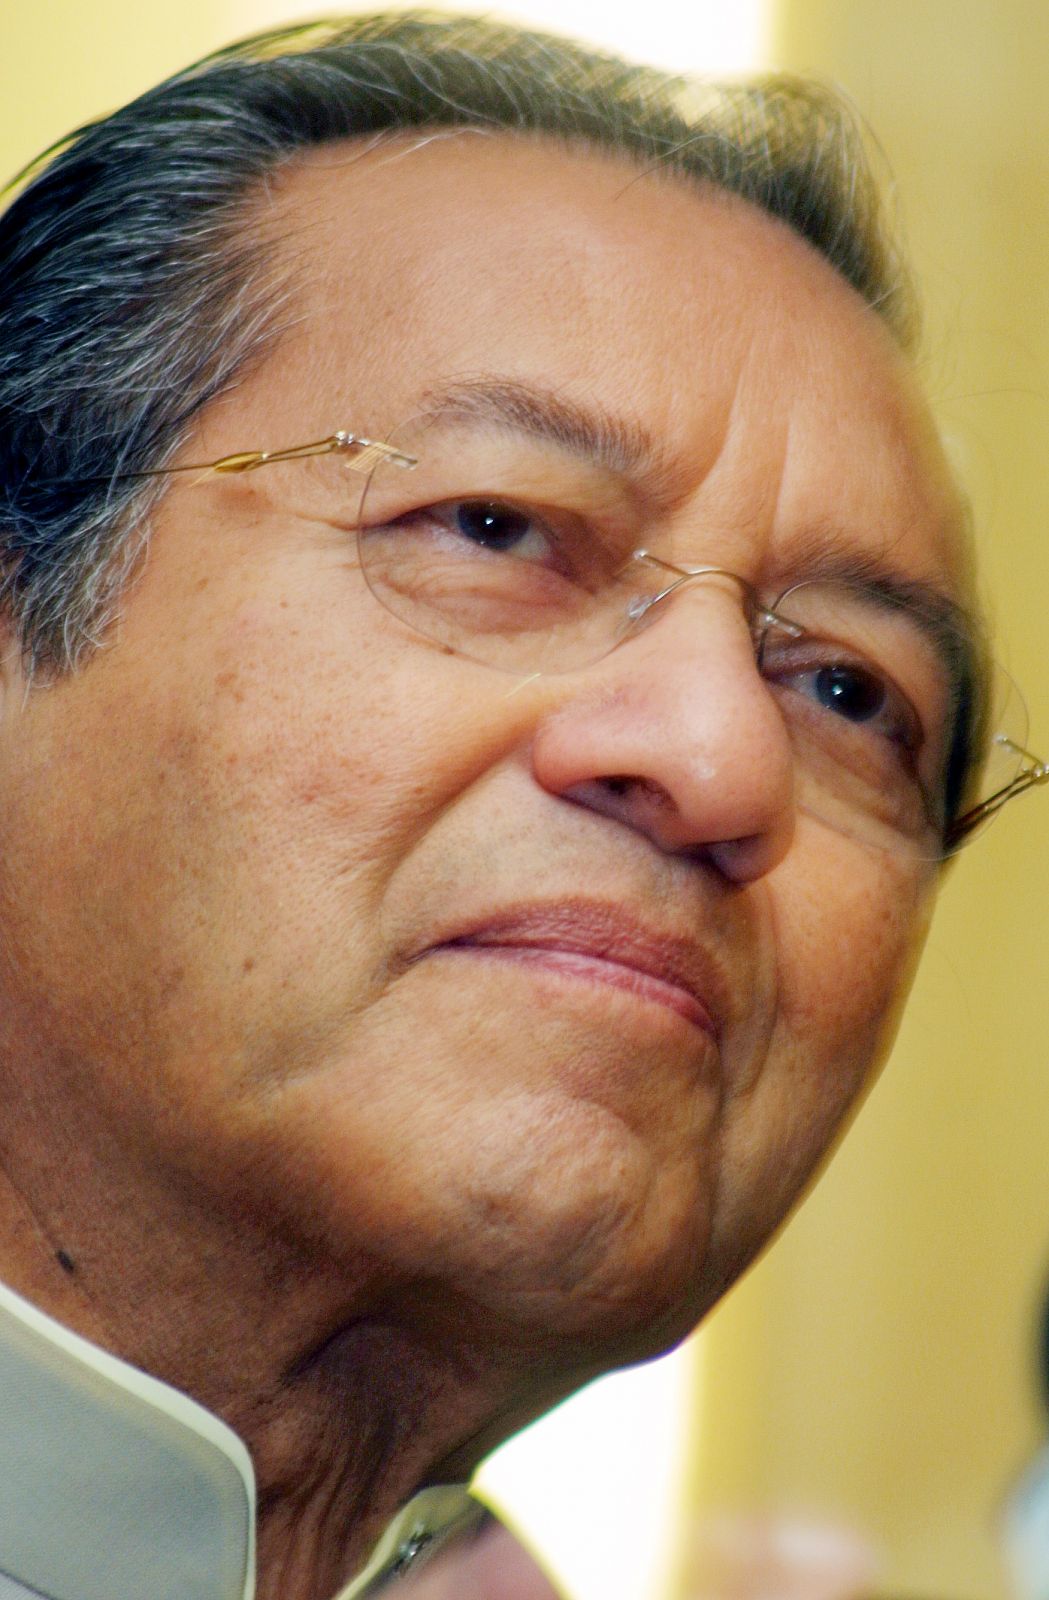 ראש ממשלת מלזיה לשעבר, מהאטיר מוחמד (צילום: imagemaker / Shutterstock.com)